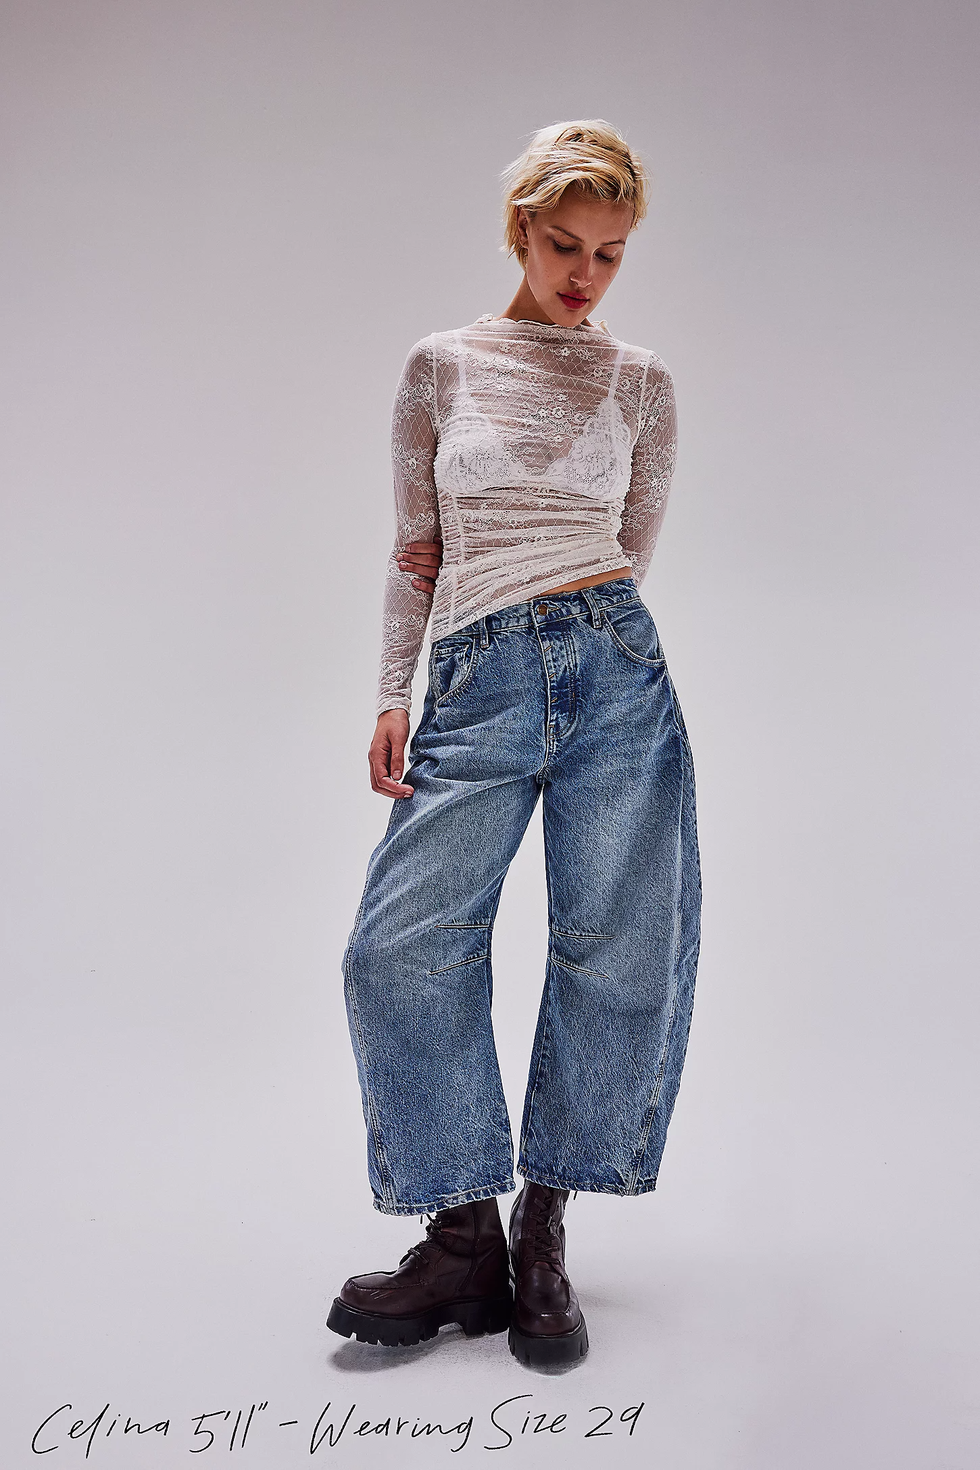 Alaïa High-rise barrel-leg jeans ALAÏA